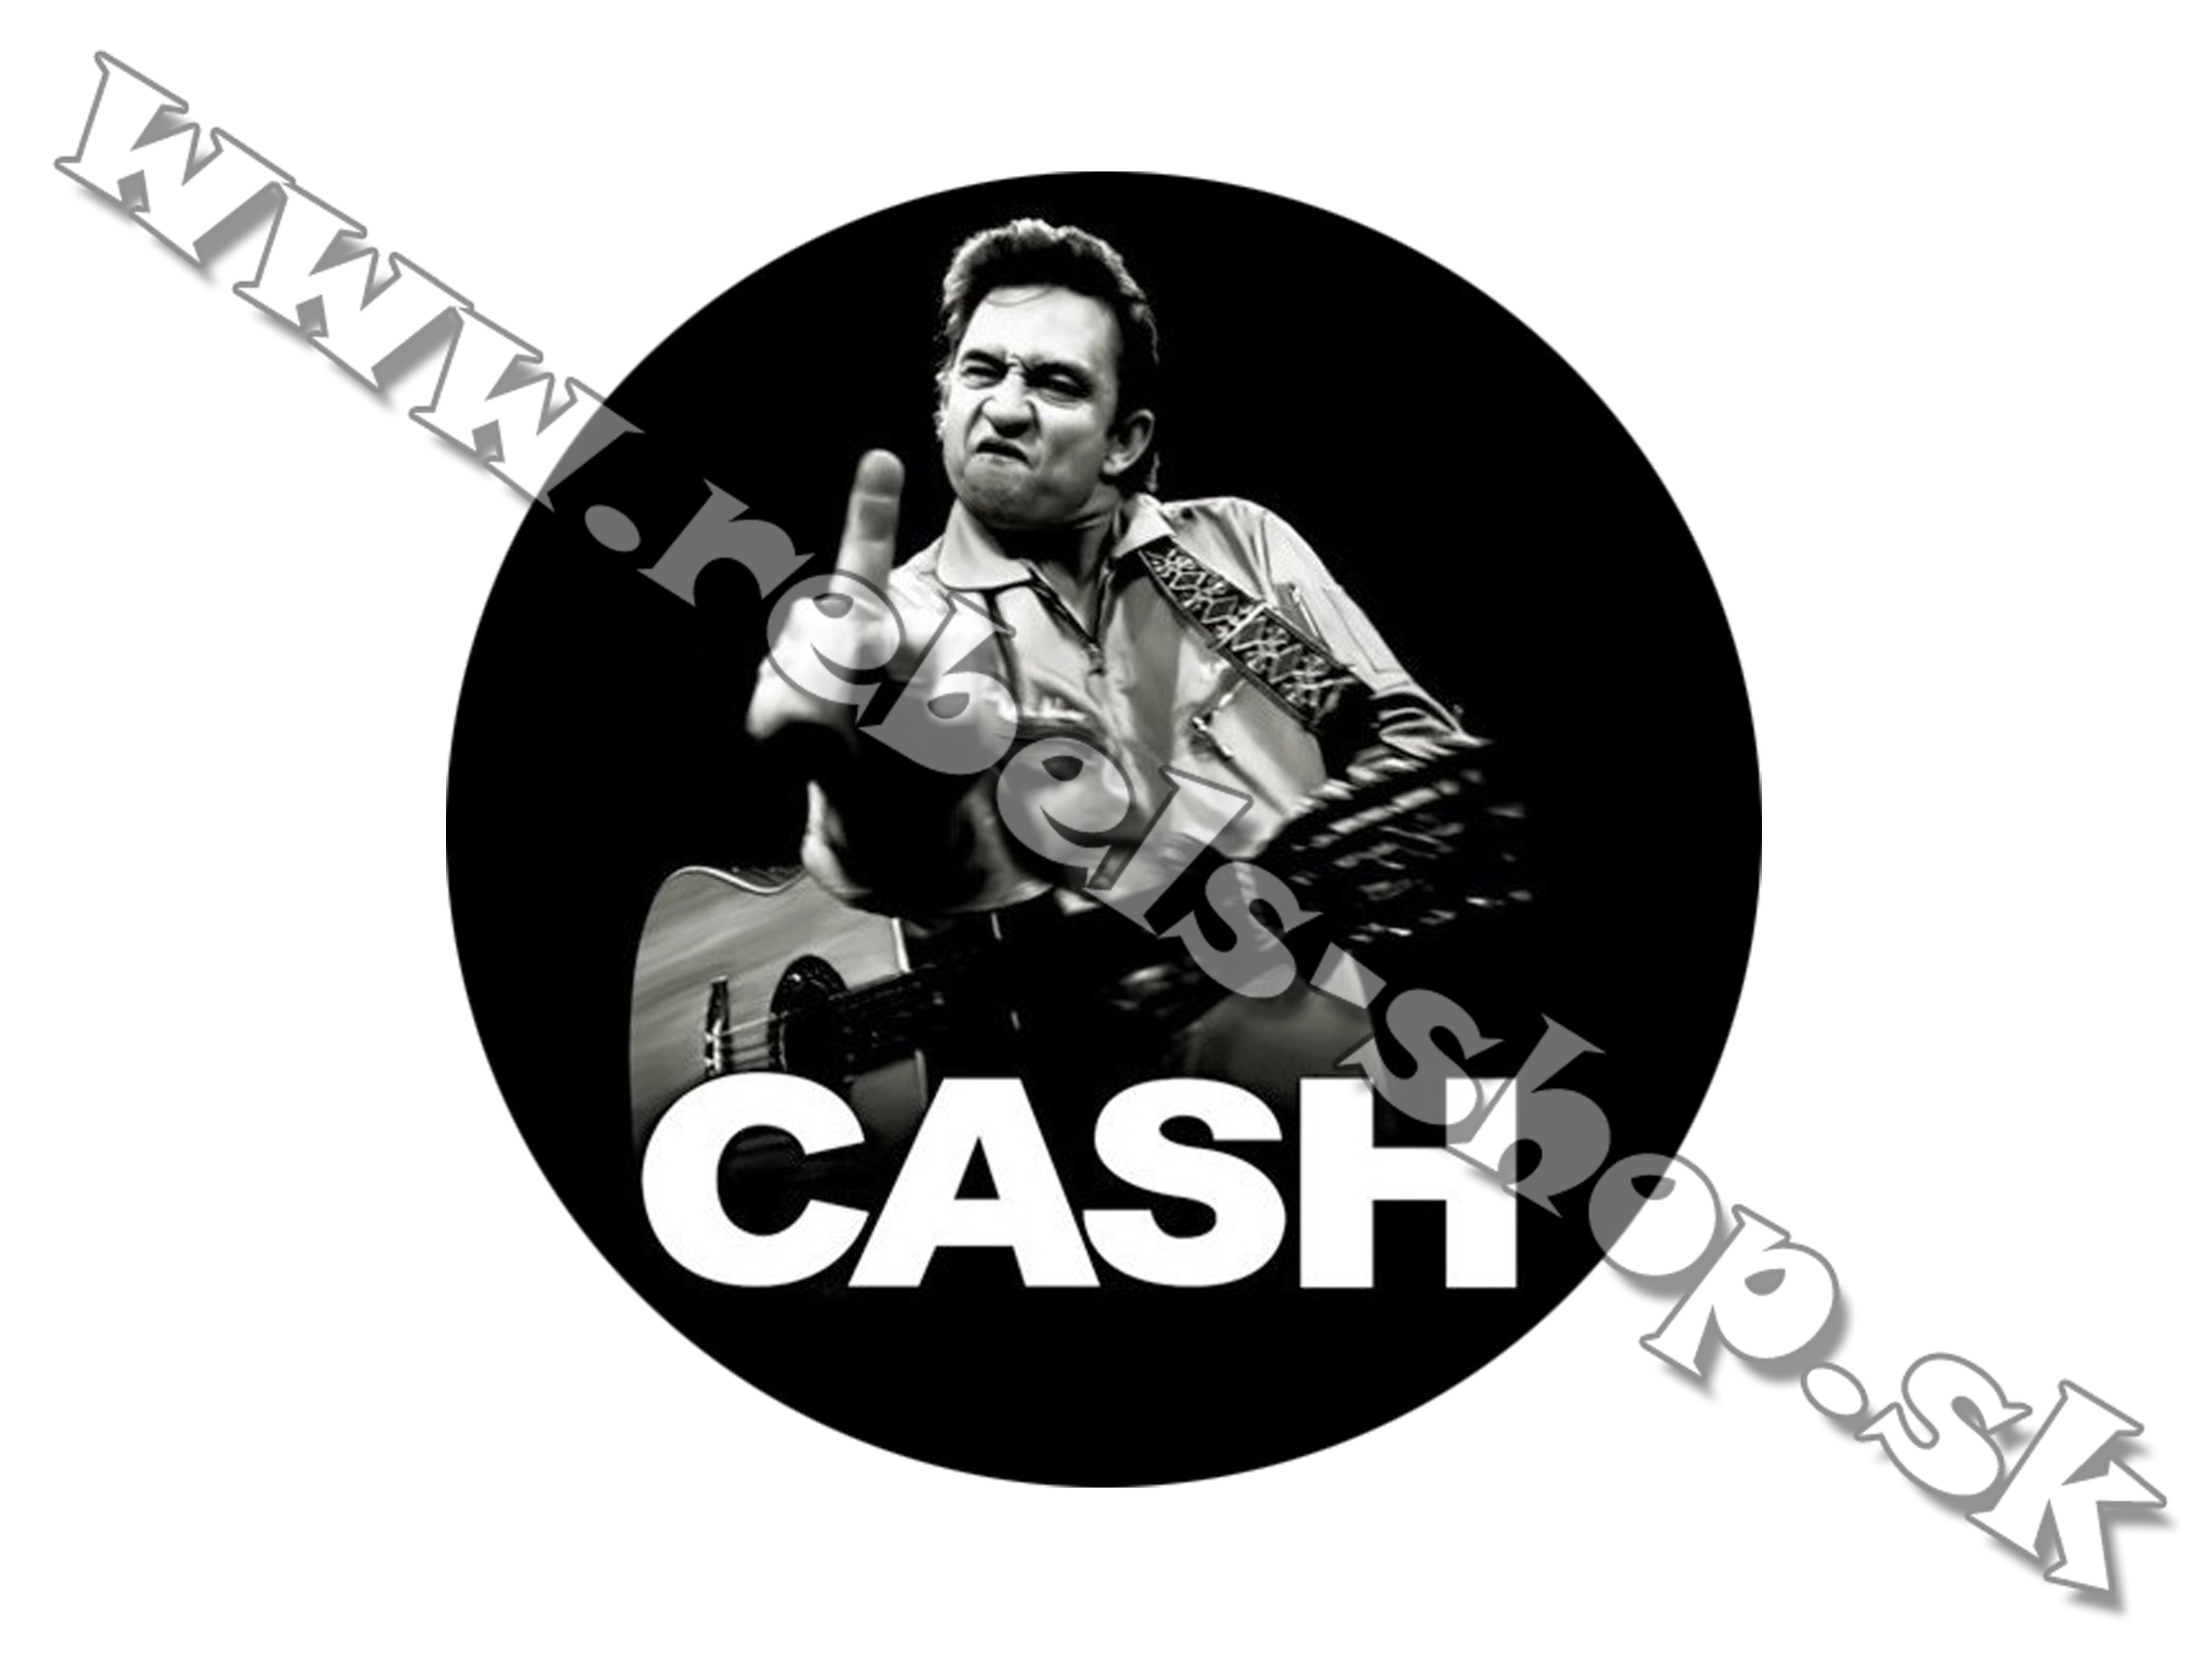 Odznak "Johnny Cash"